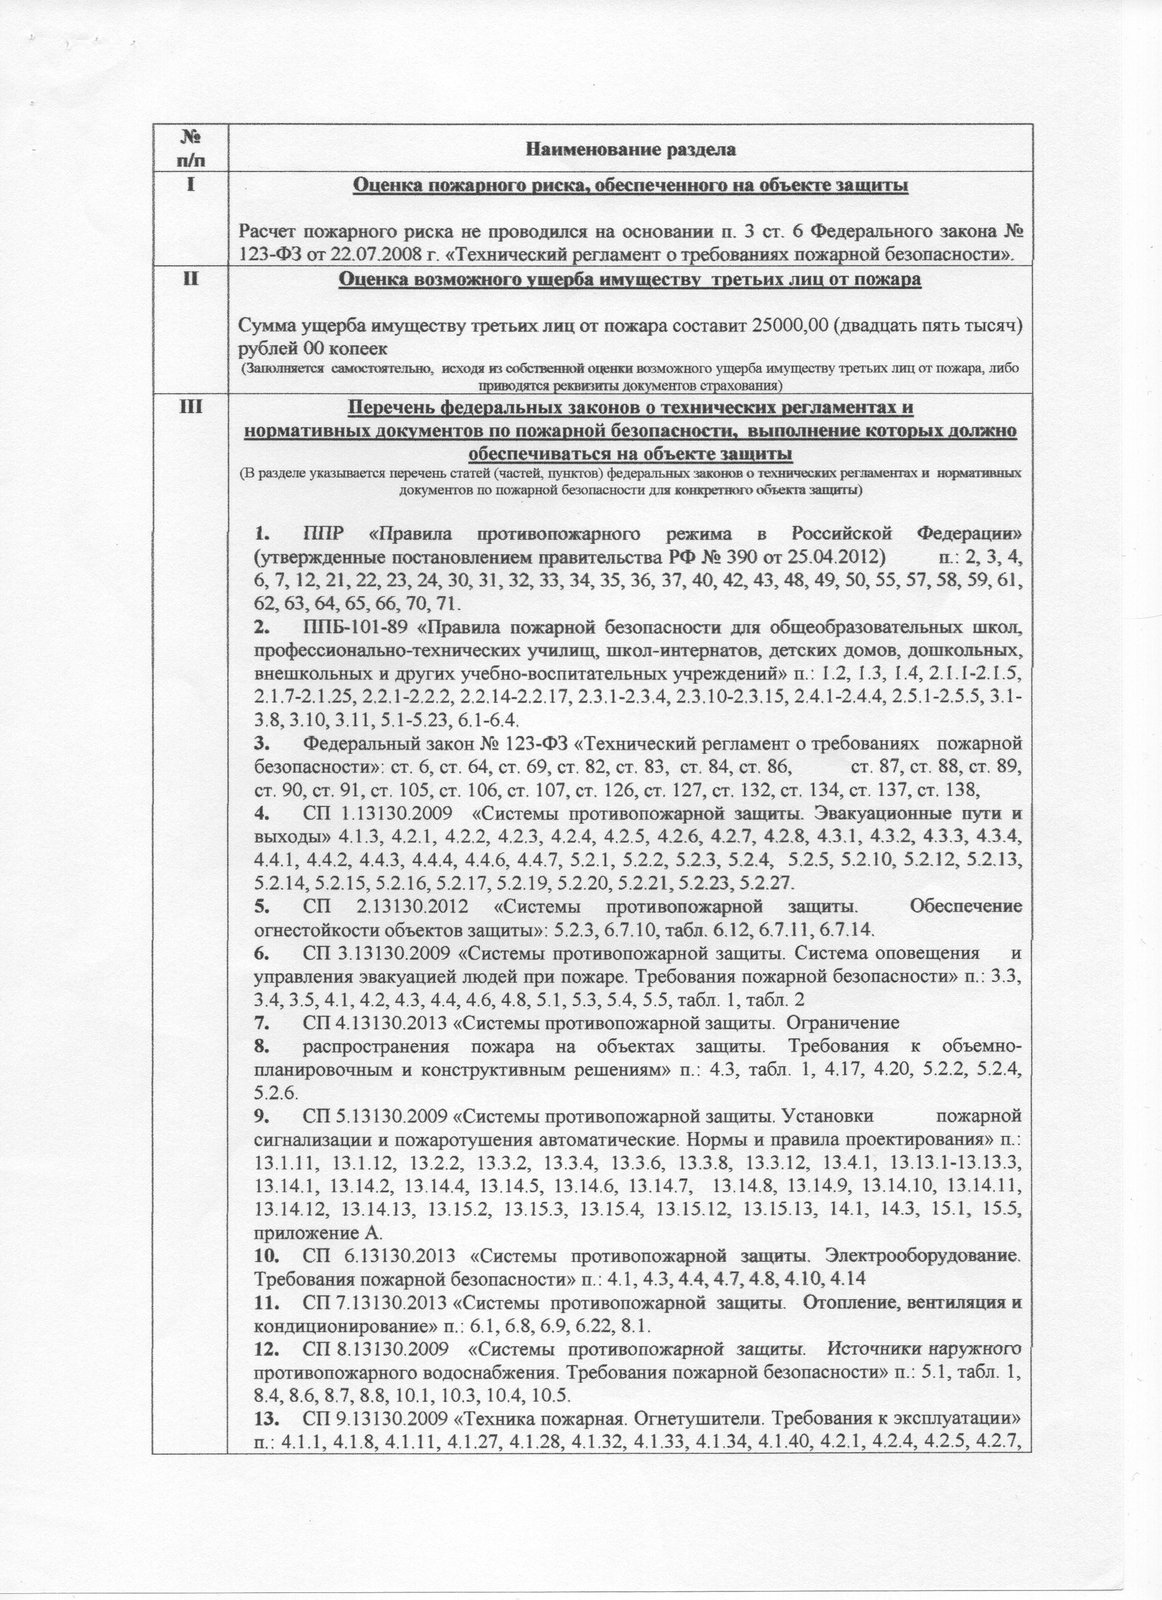 Декларация мчс россии. Форма декларации пожарной безопасности 2021.